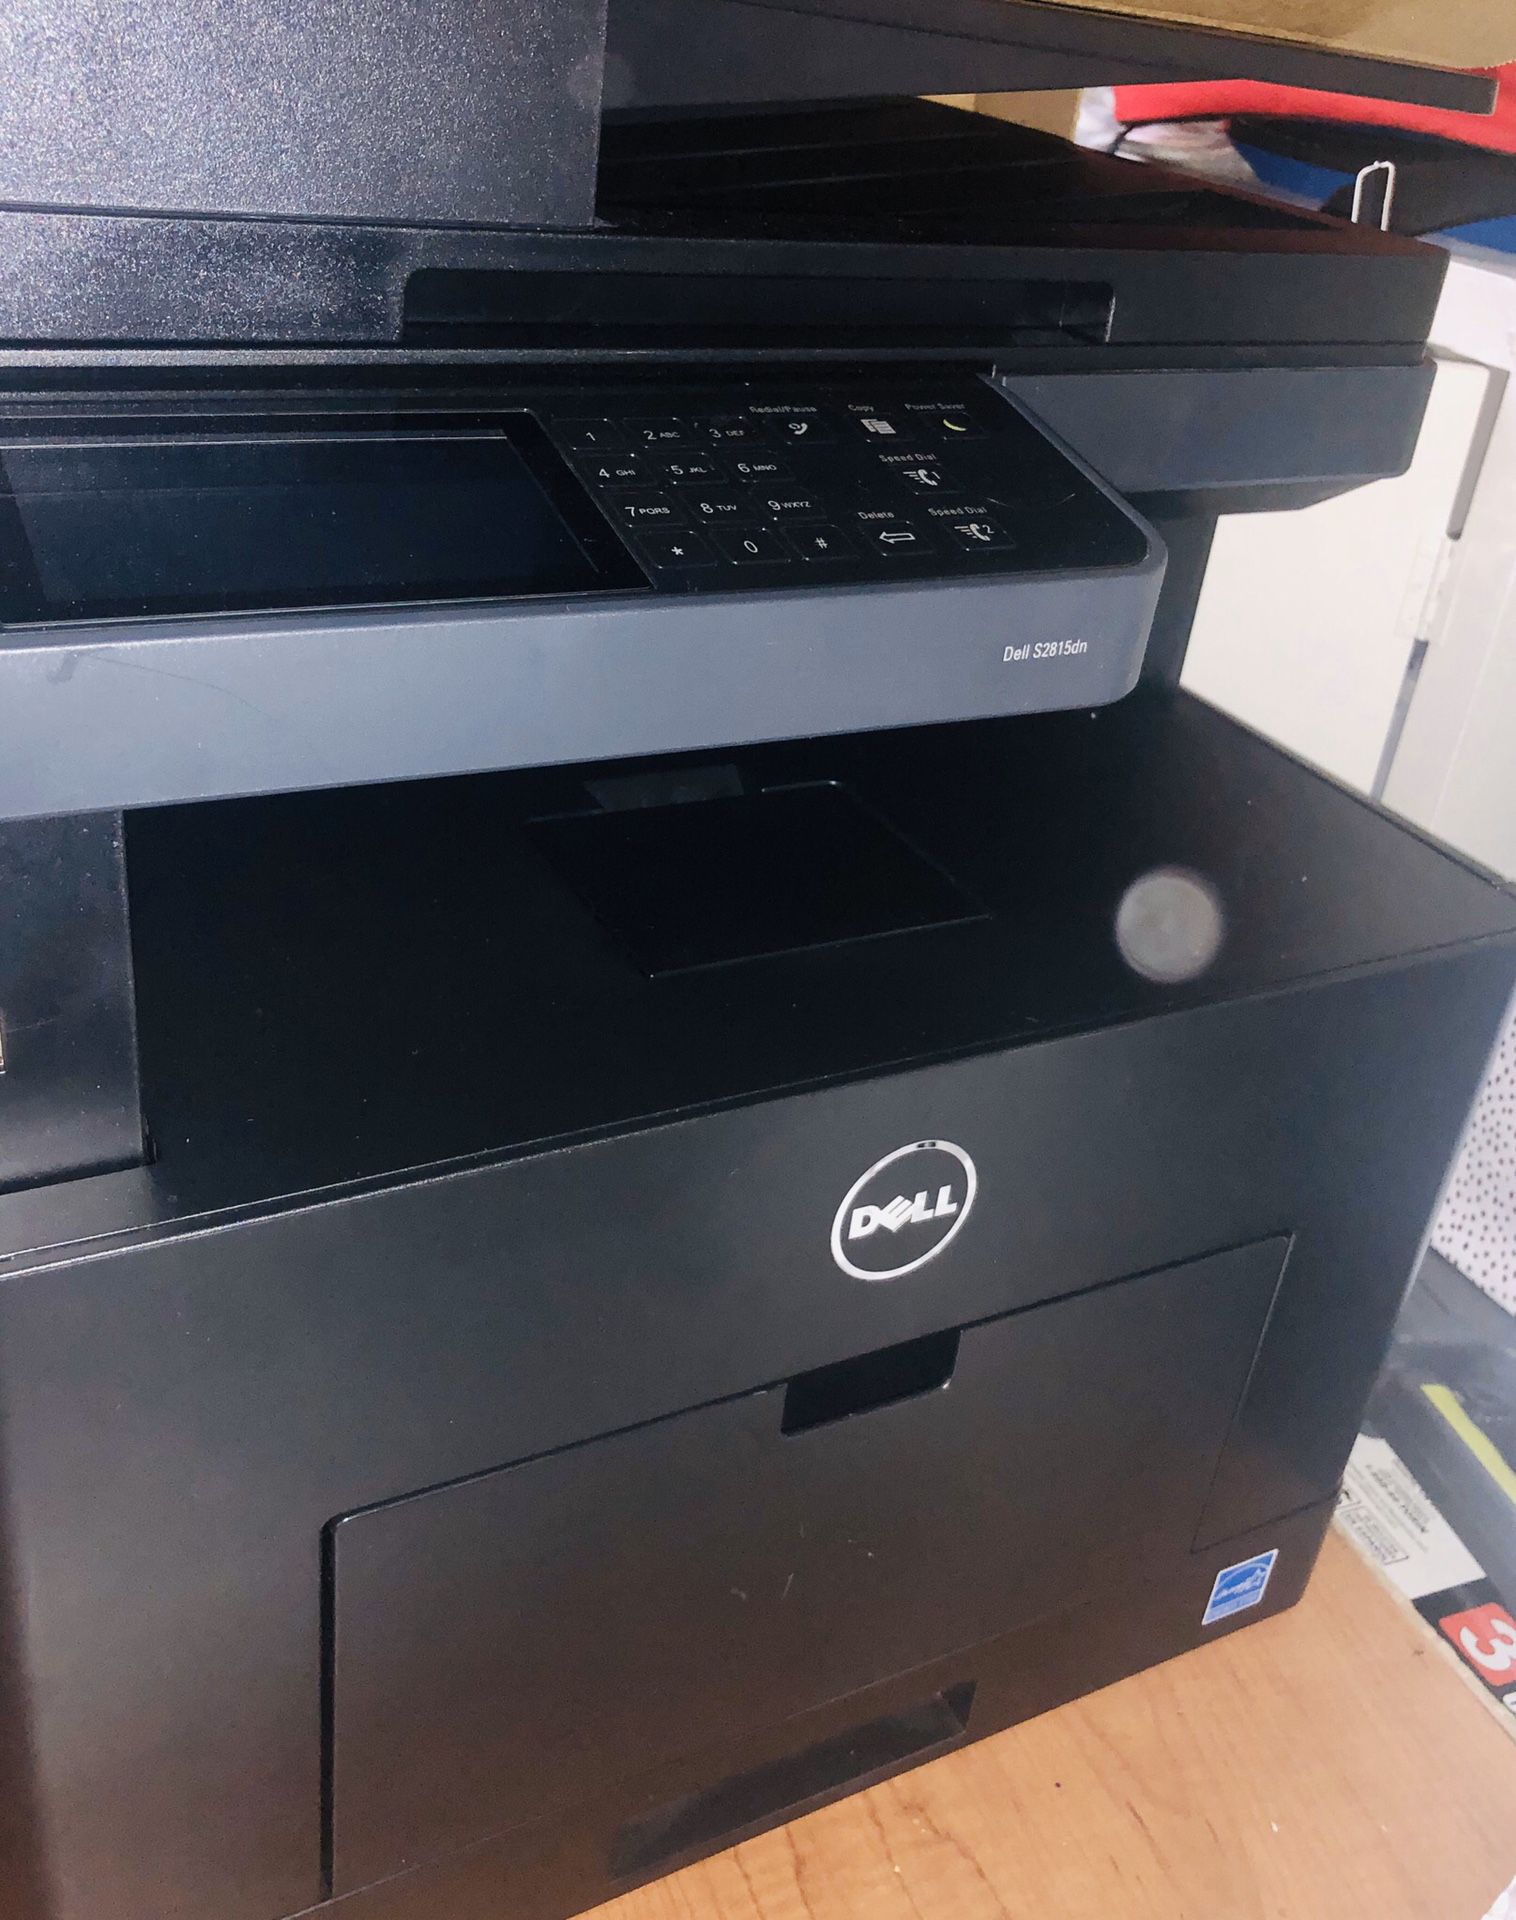 Dell S2815dn Printer